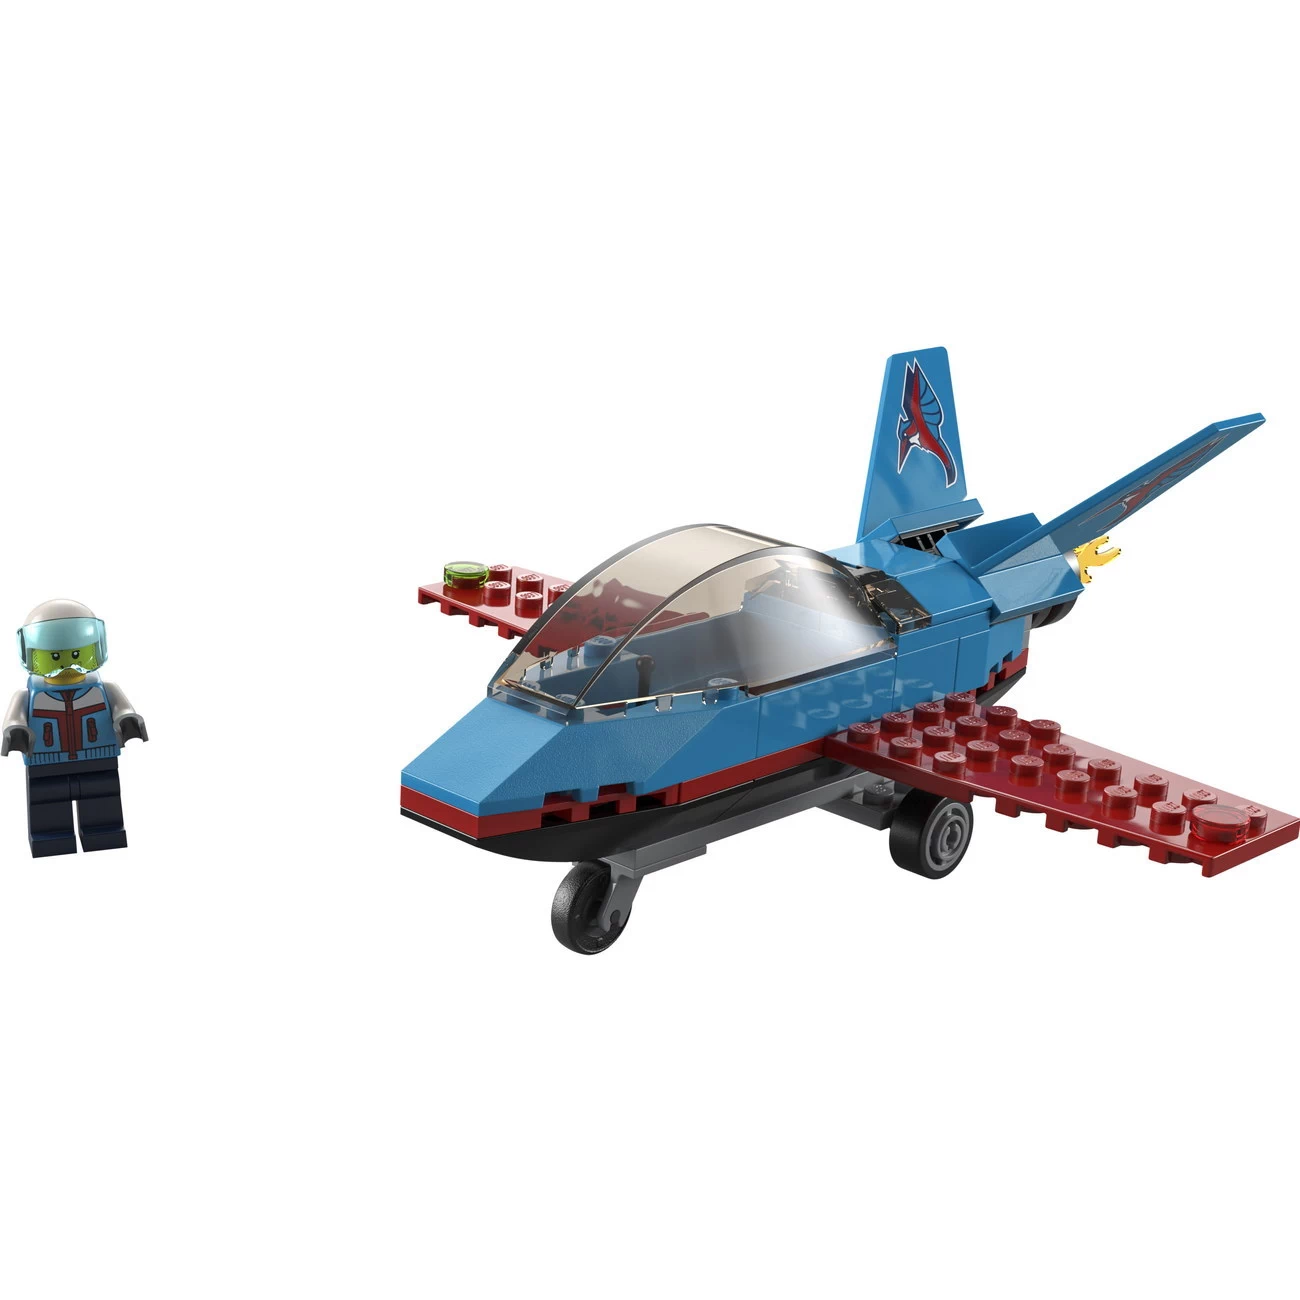 Stuntflugzeug (60323)